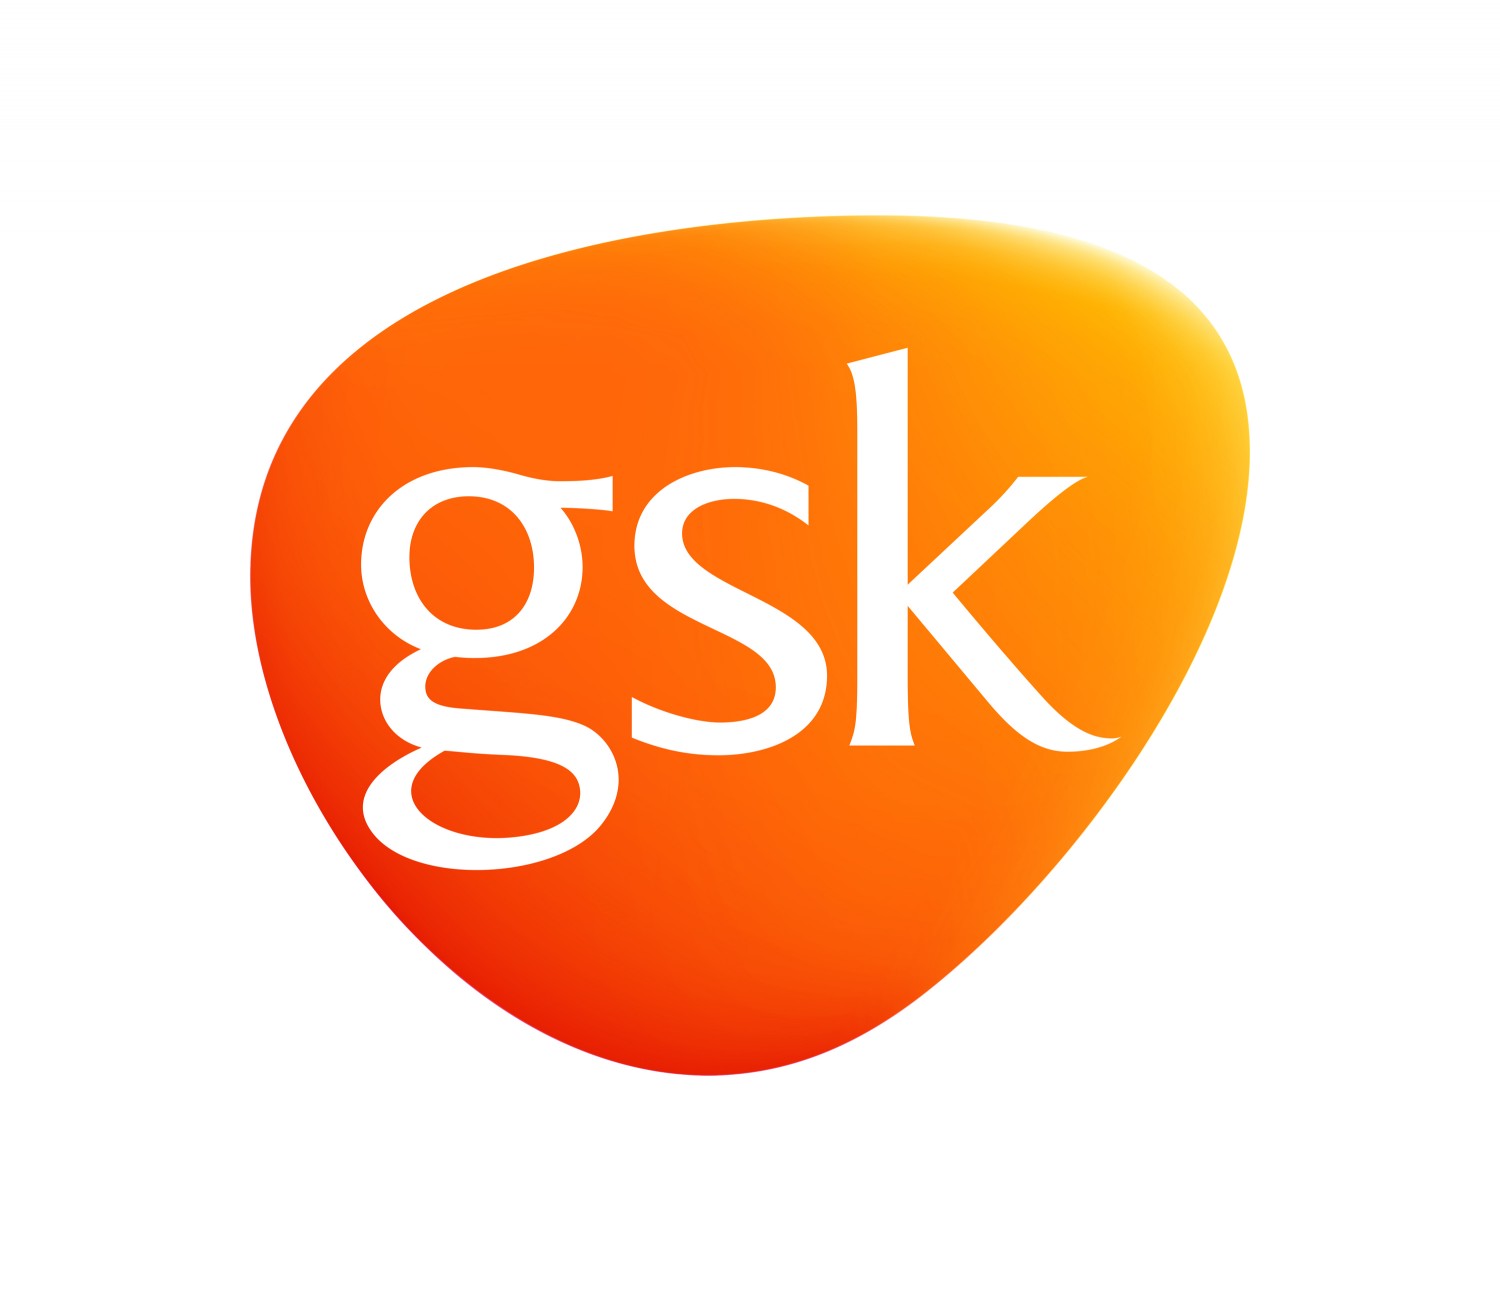 GSK продовжує практику розкриття даних про виплати на користь спеціалістів та організацій охорони здоров’я в Україні й оприлюднила інформаці